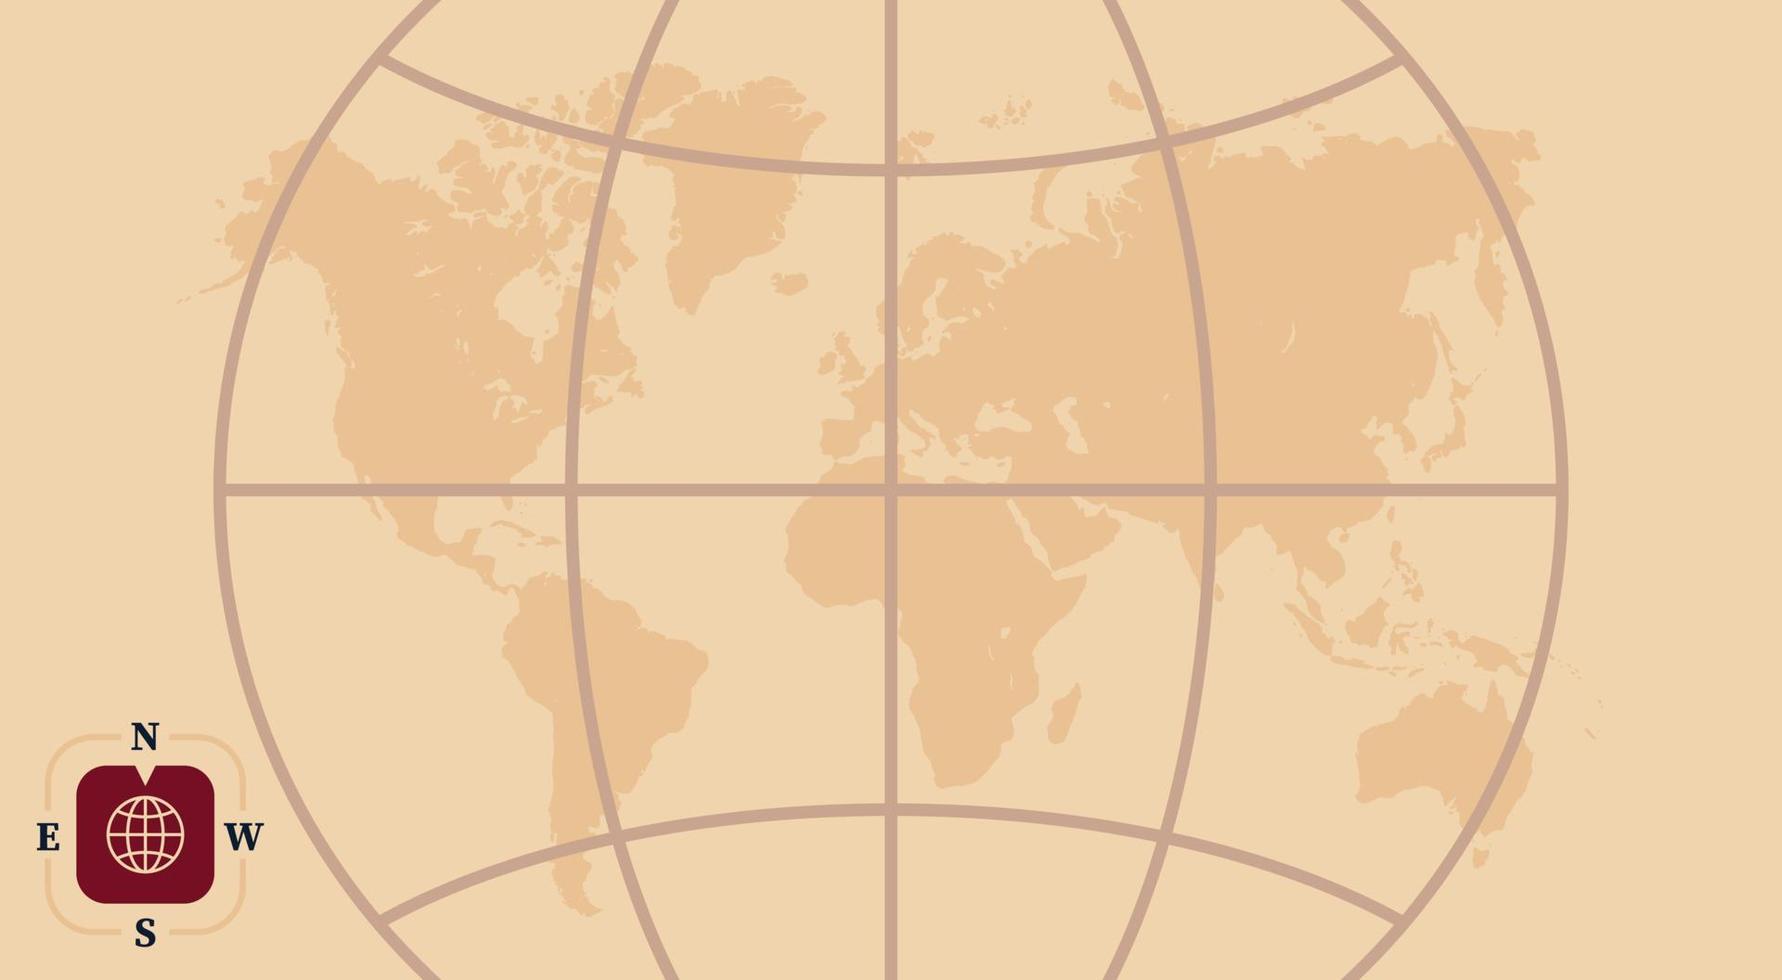 mapa da terra descoberta e ilustração em vetor plana do mapa do mundo.